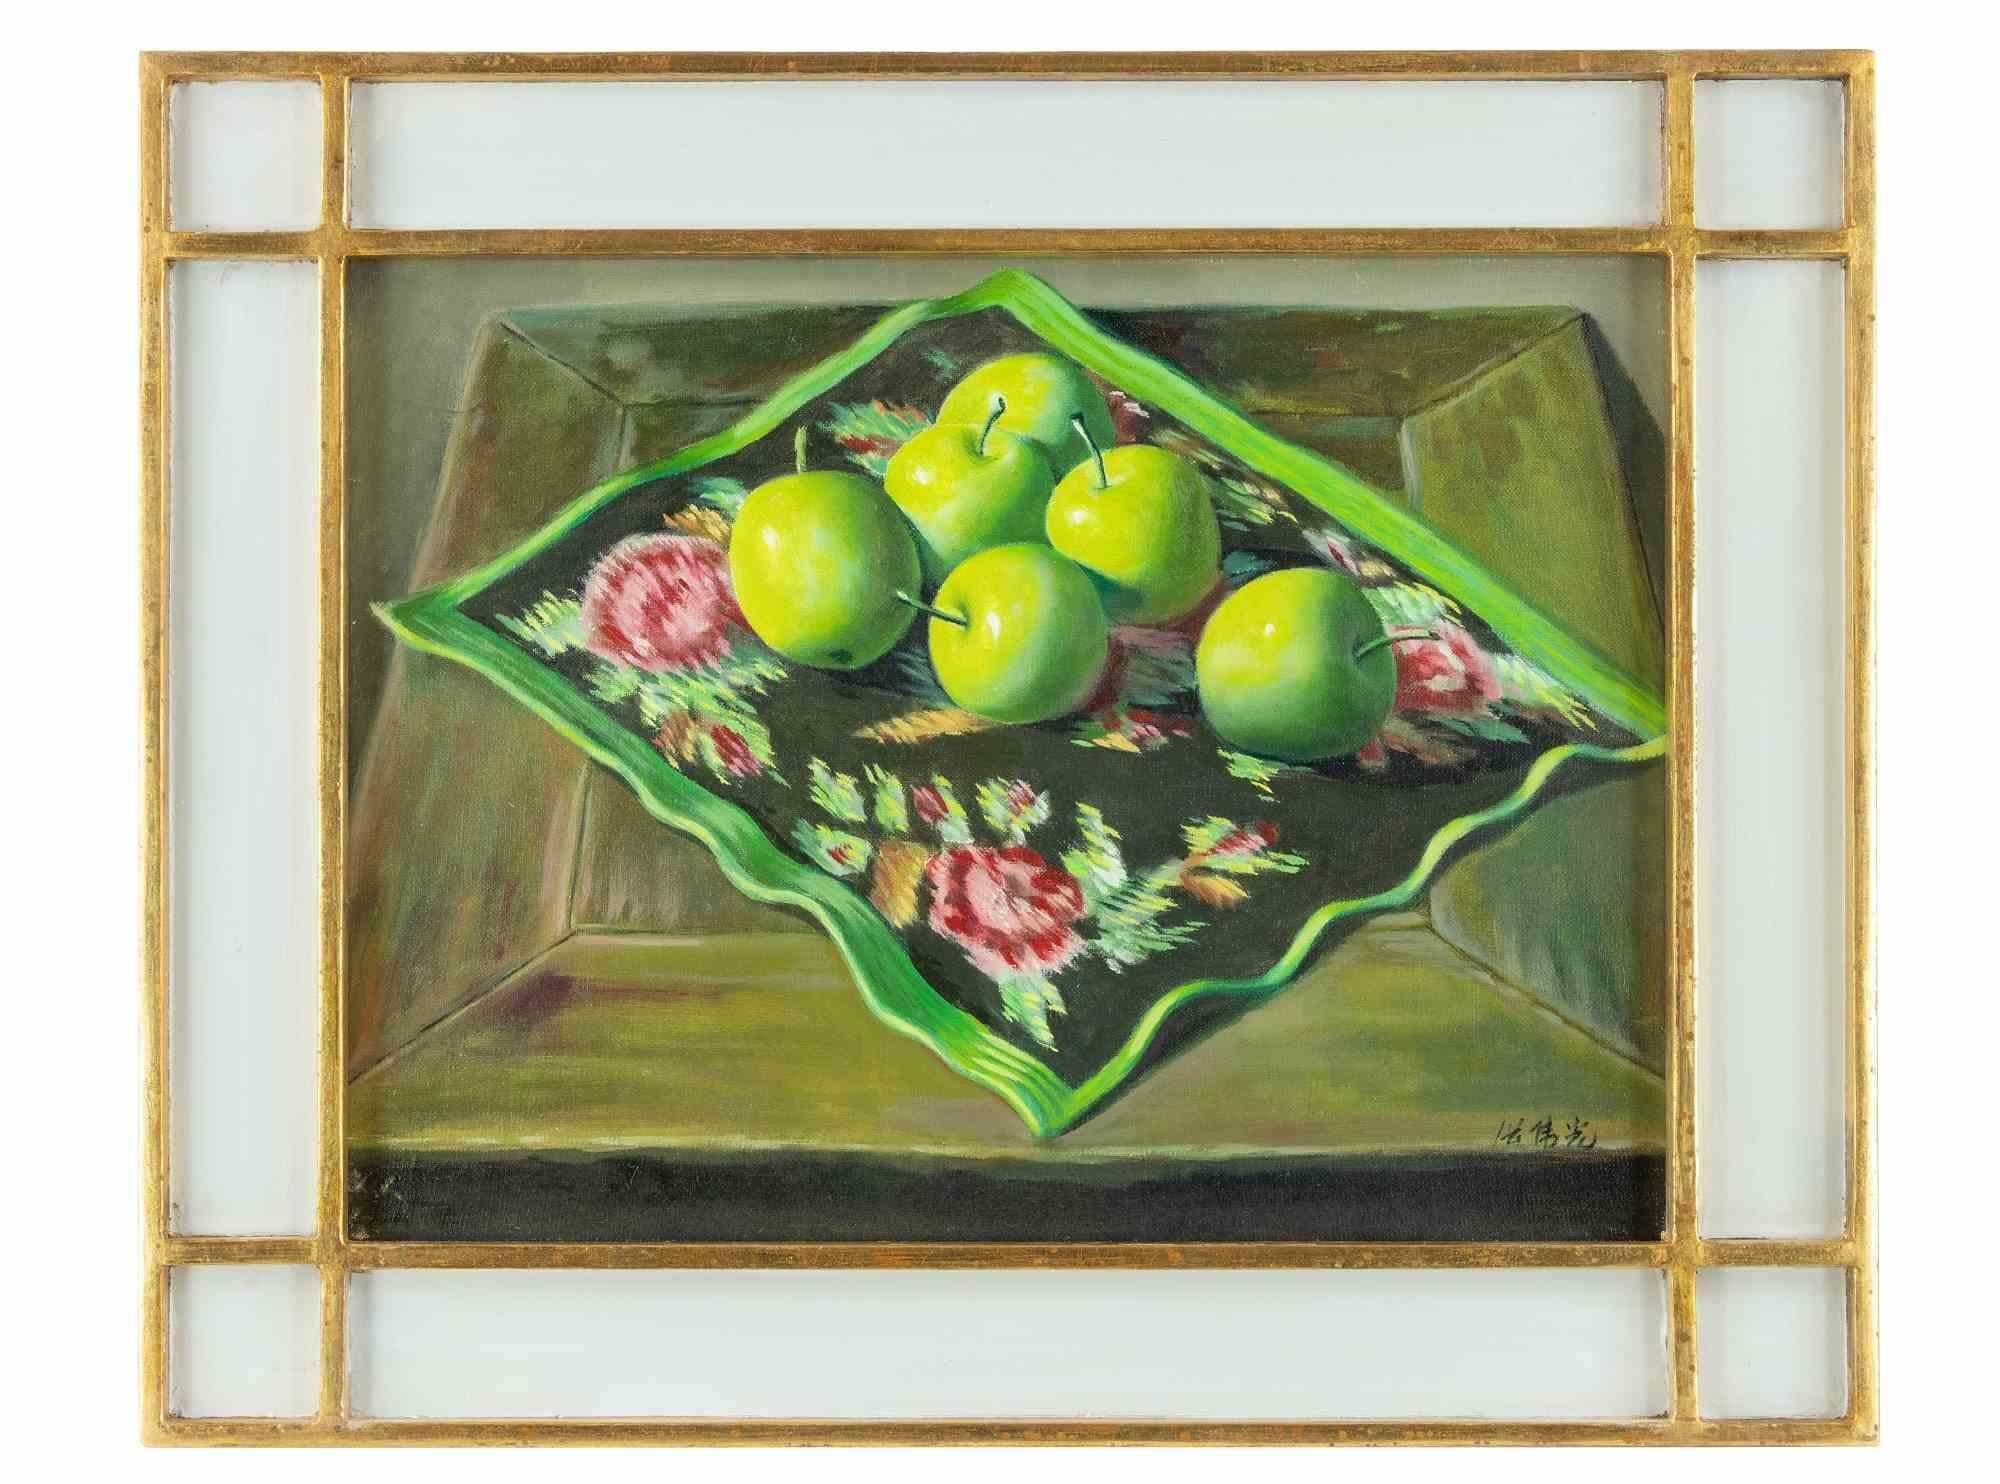 Six Green Apples ist ein Originalkunstwerk, das 2006 von Zhang Wei Guang (Mirror) realisiert wurde.

Schönes Ölgemälde auf Leinwand. 

Handsigniert am unteren Rand.

Einschließlich Rahmen.

Handschriftliche Notizen auf der Rückseite

Zhang Wei Guang